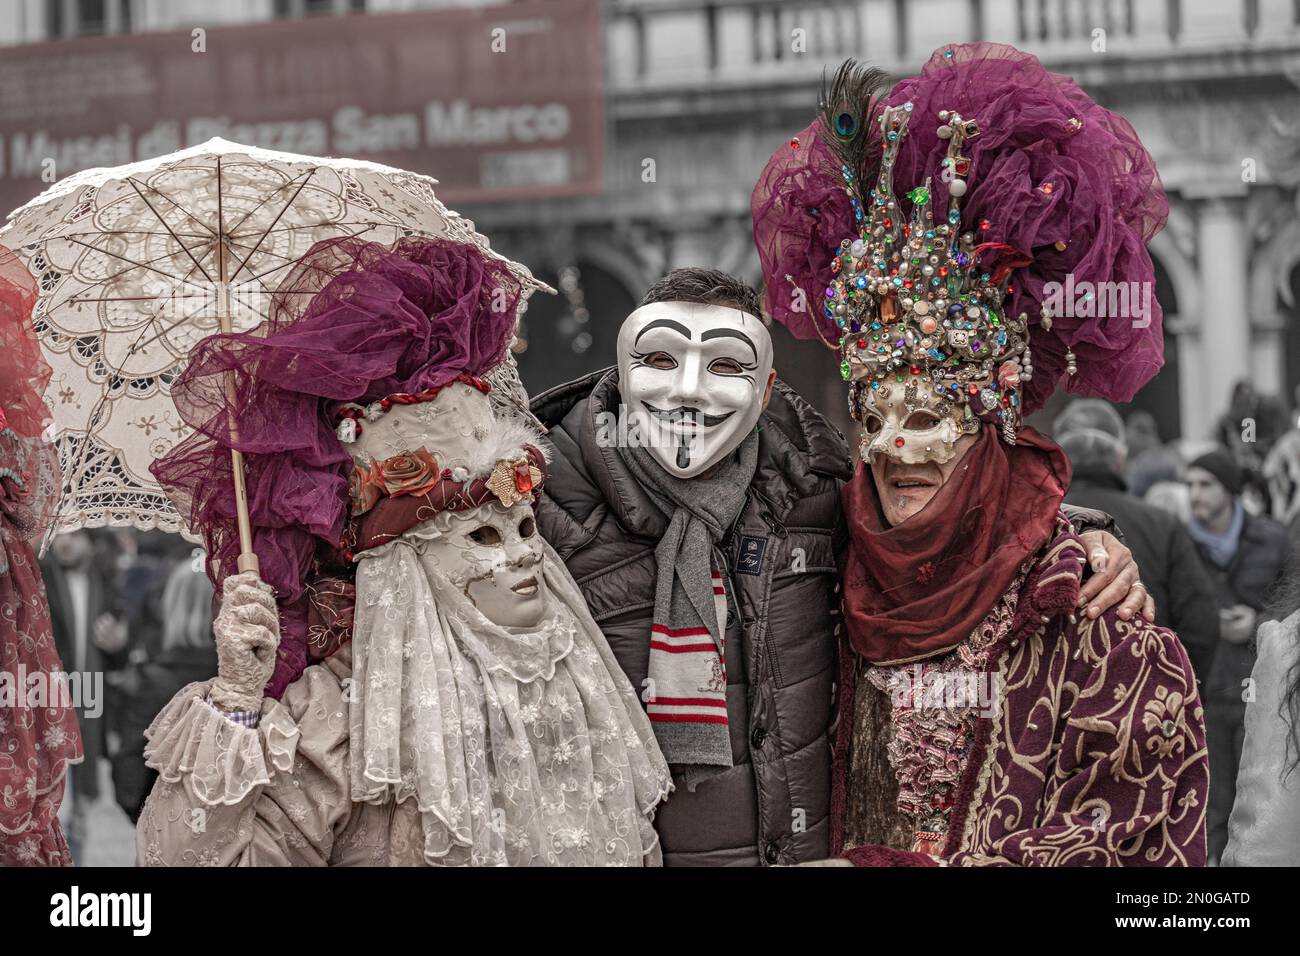 Karneval In Venedig. Ein Mann mit anonymer Maske posiert mit einer kostümierten maskierten Frau mit einem Sonnenschirm und einem kostümierten maskierten Mann mit einem Hut mit Edelsteinen Stockfoto